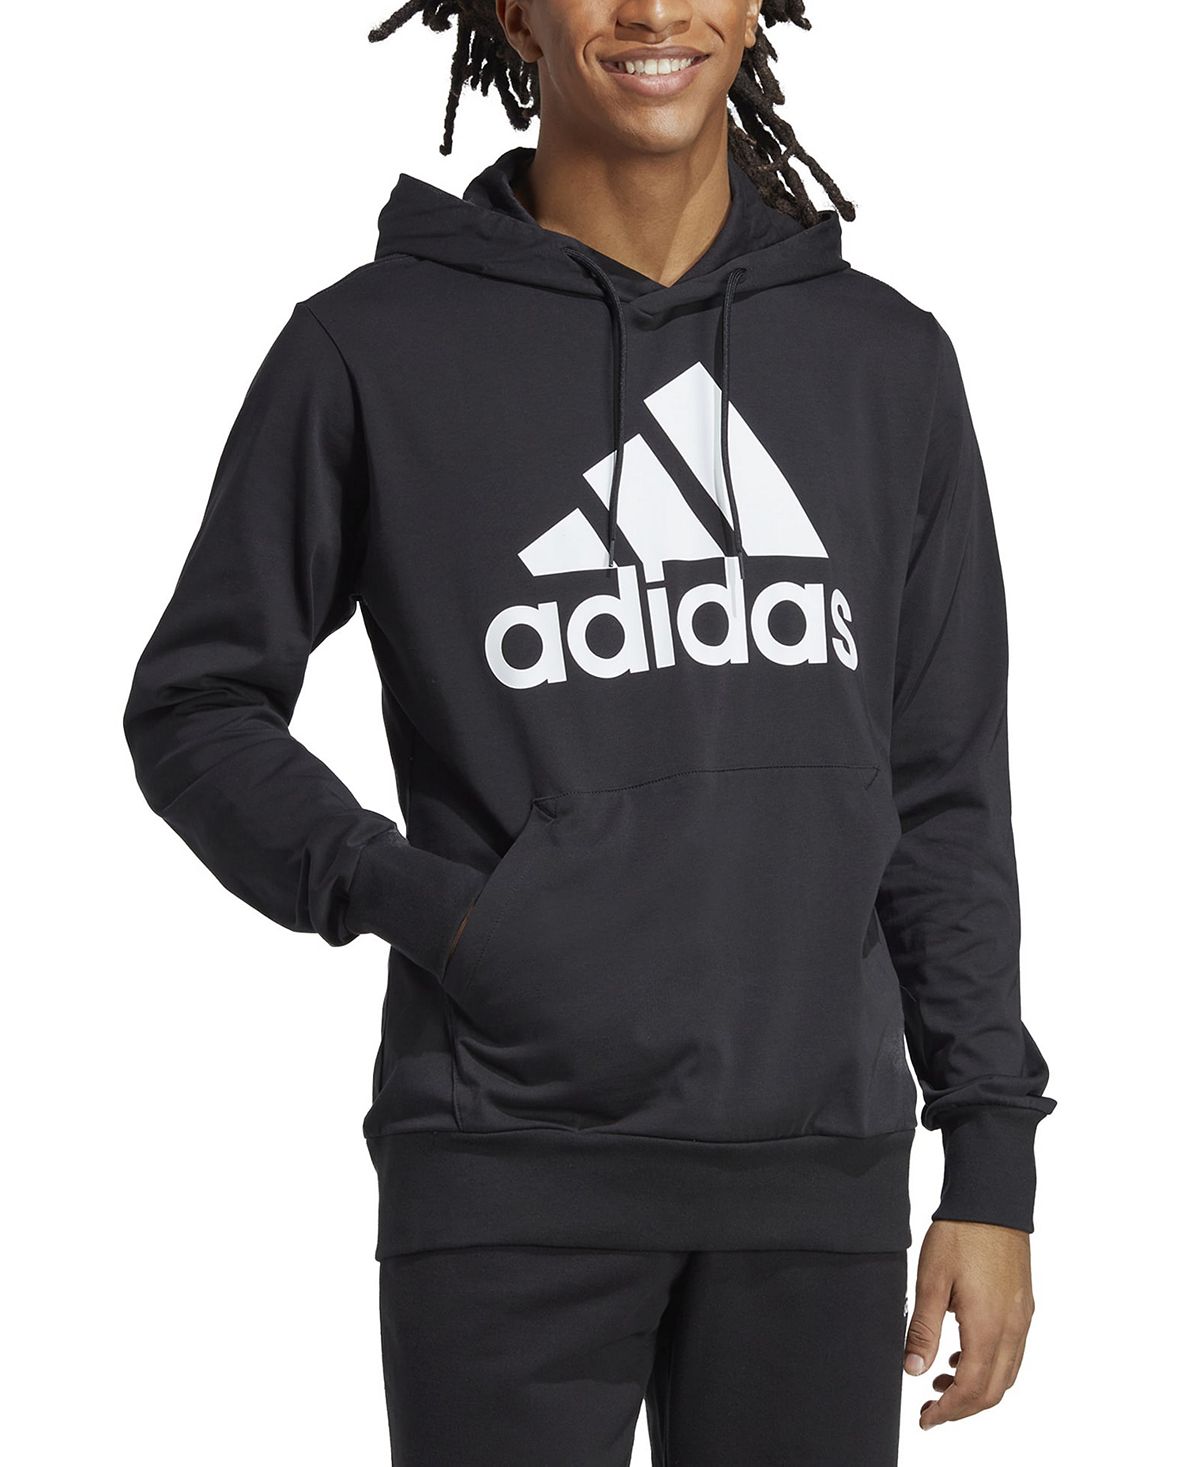 Мужская толстовка с логотипом из джерси Essentials Performance adidas толстовка adidas stadium fleece badge of sport sweatshirt бежевый